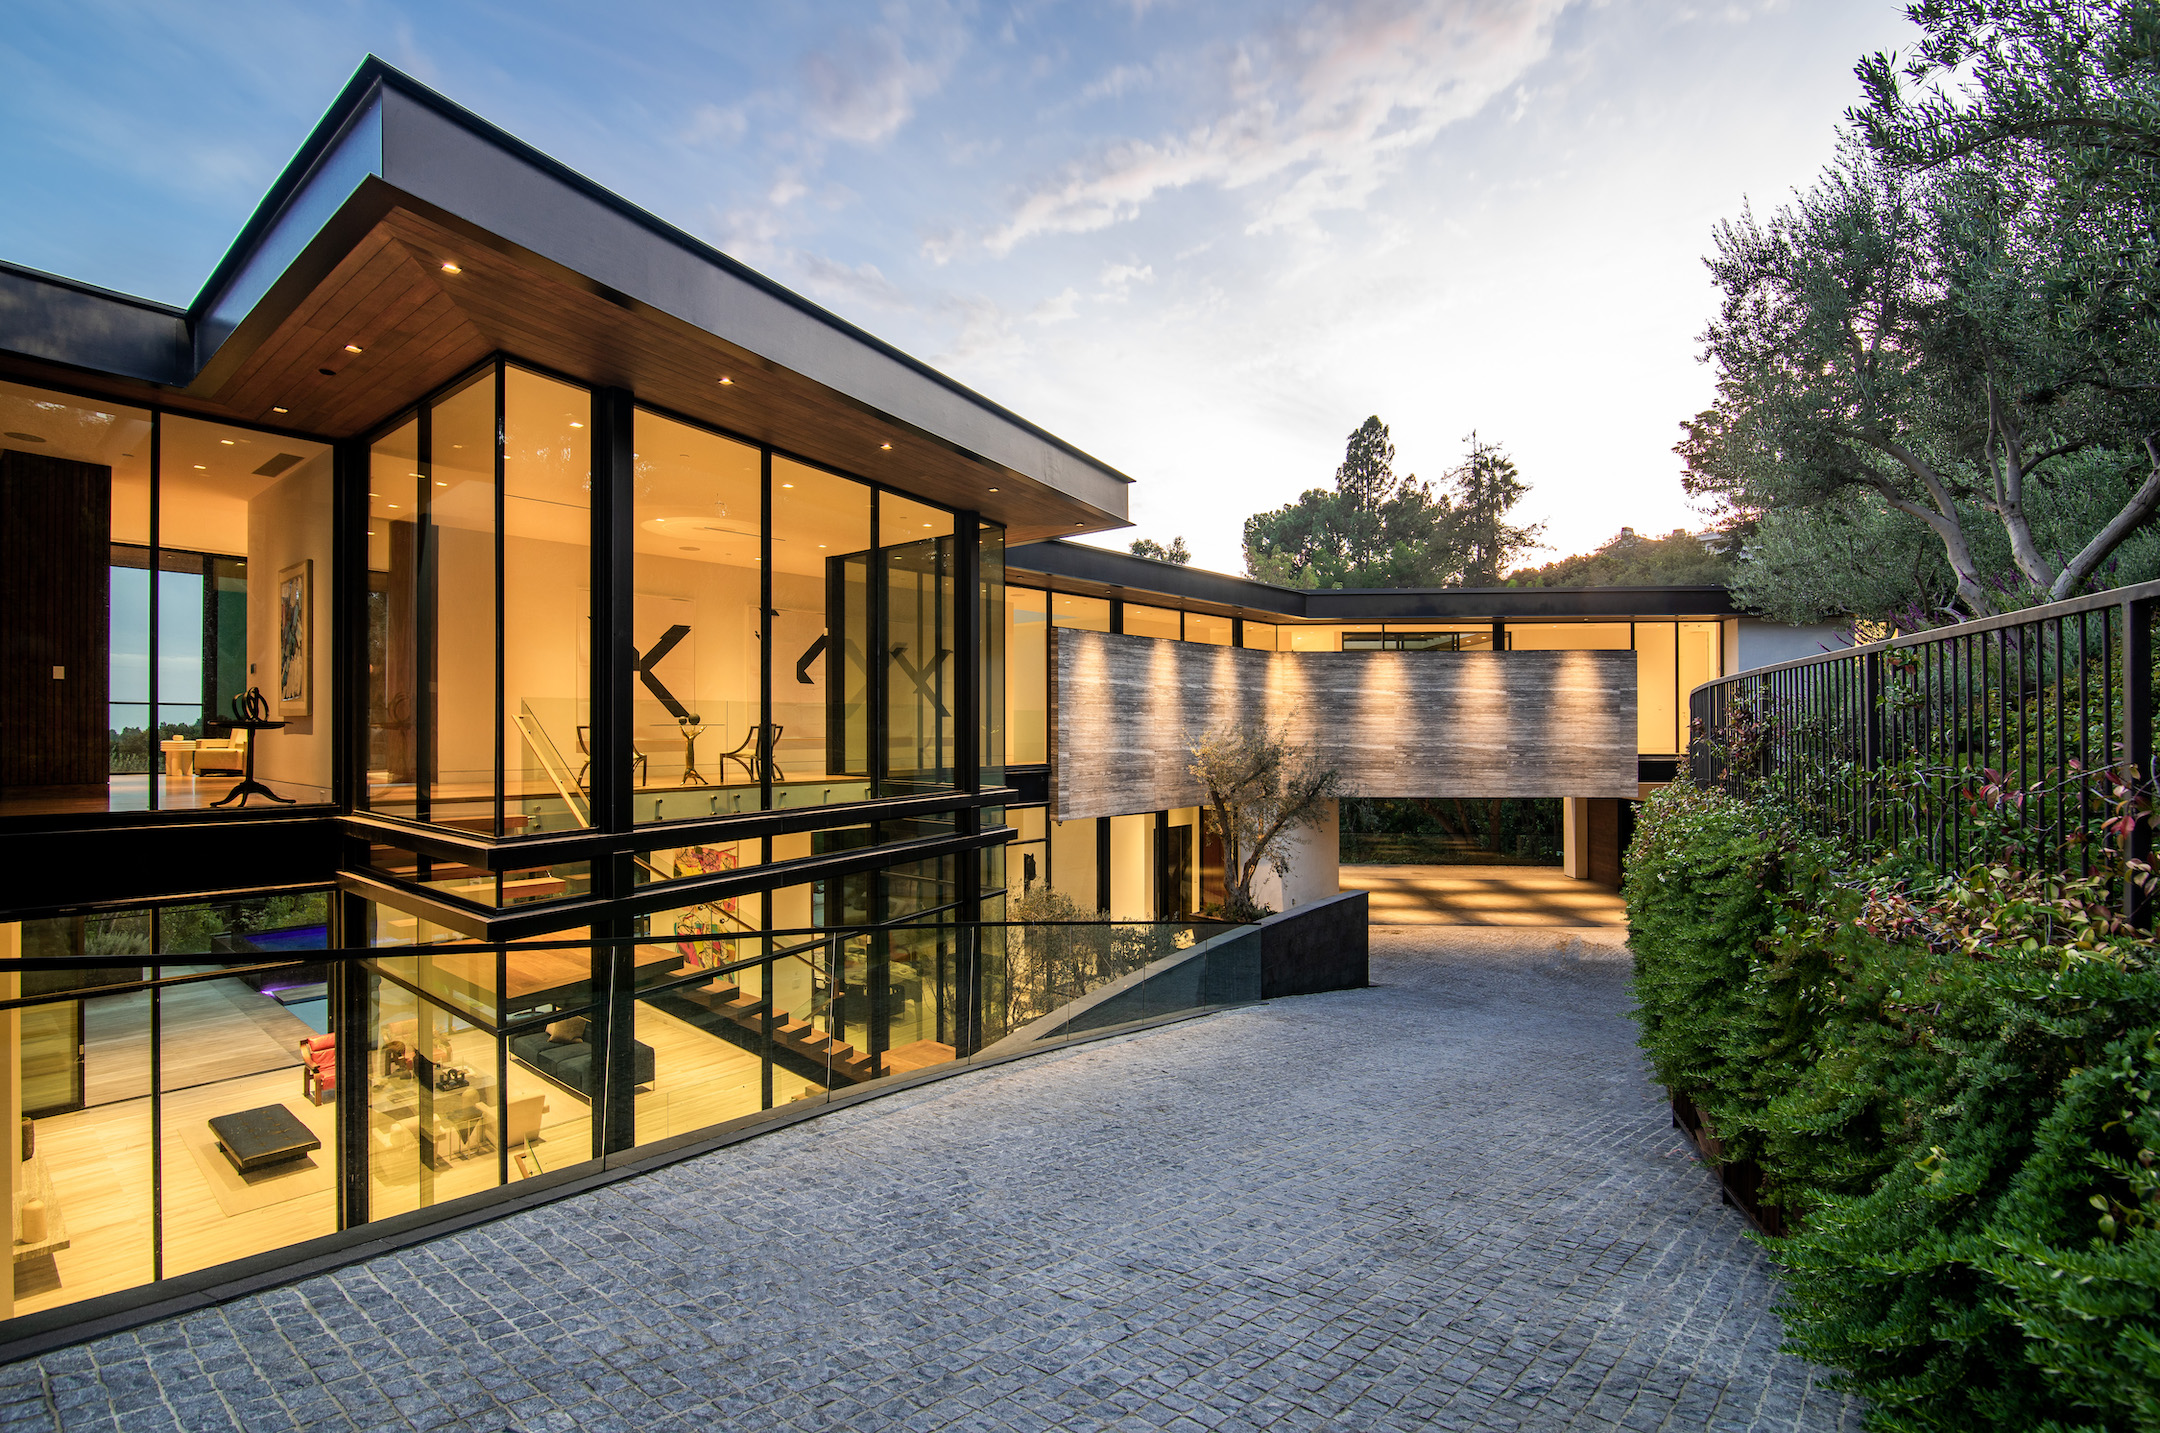 Perugia Way i Kalifornien av McClean Design. Här hittar exklusiva hem, lyxhem, från världens bästa arkitekter.